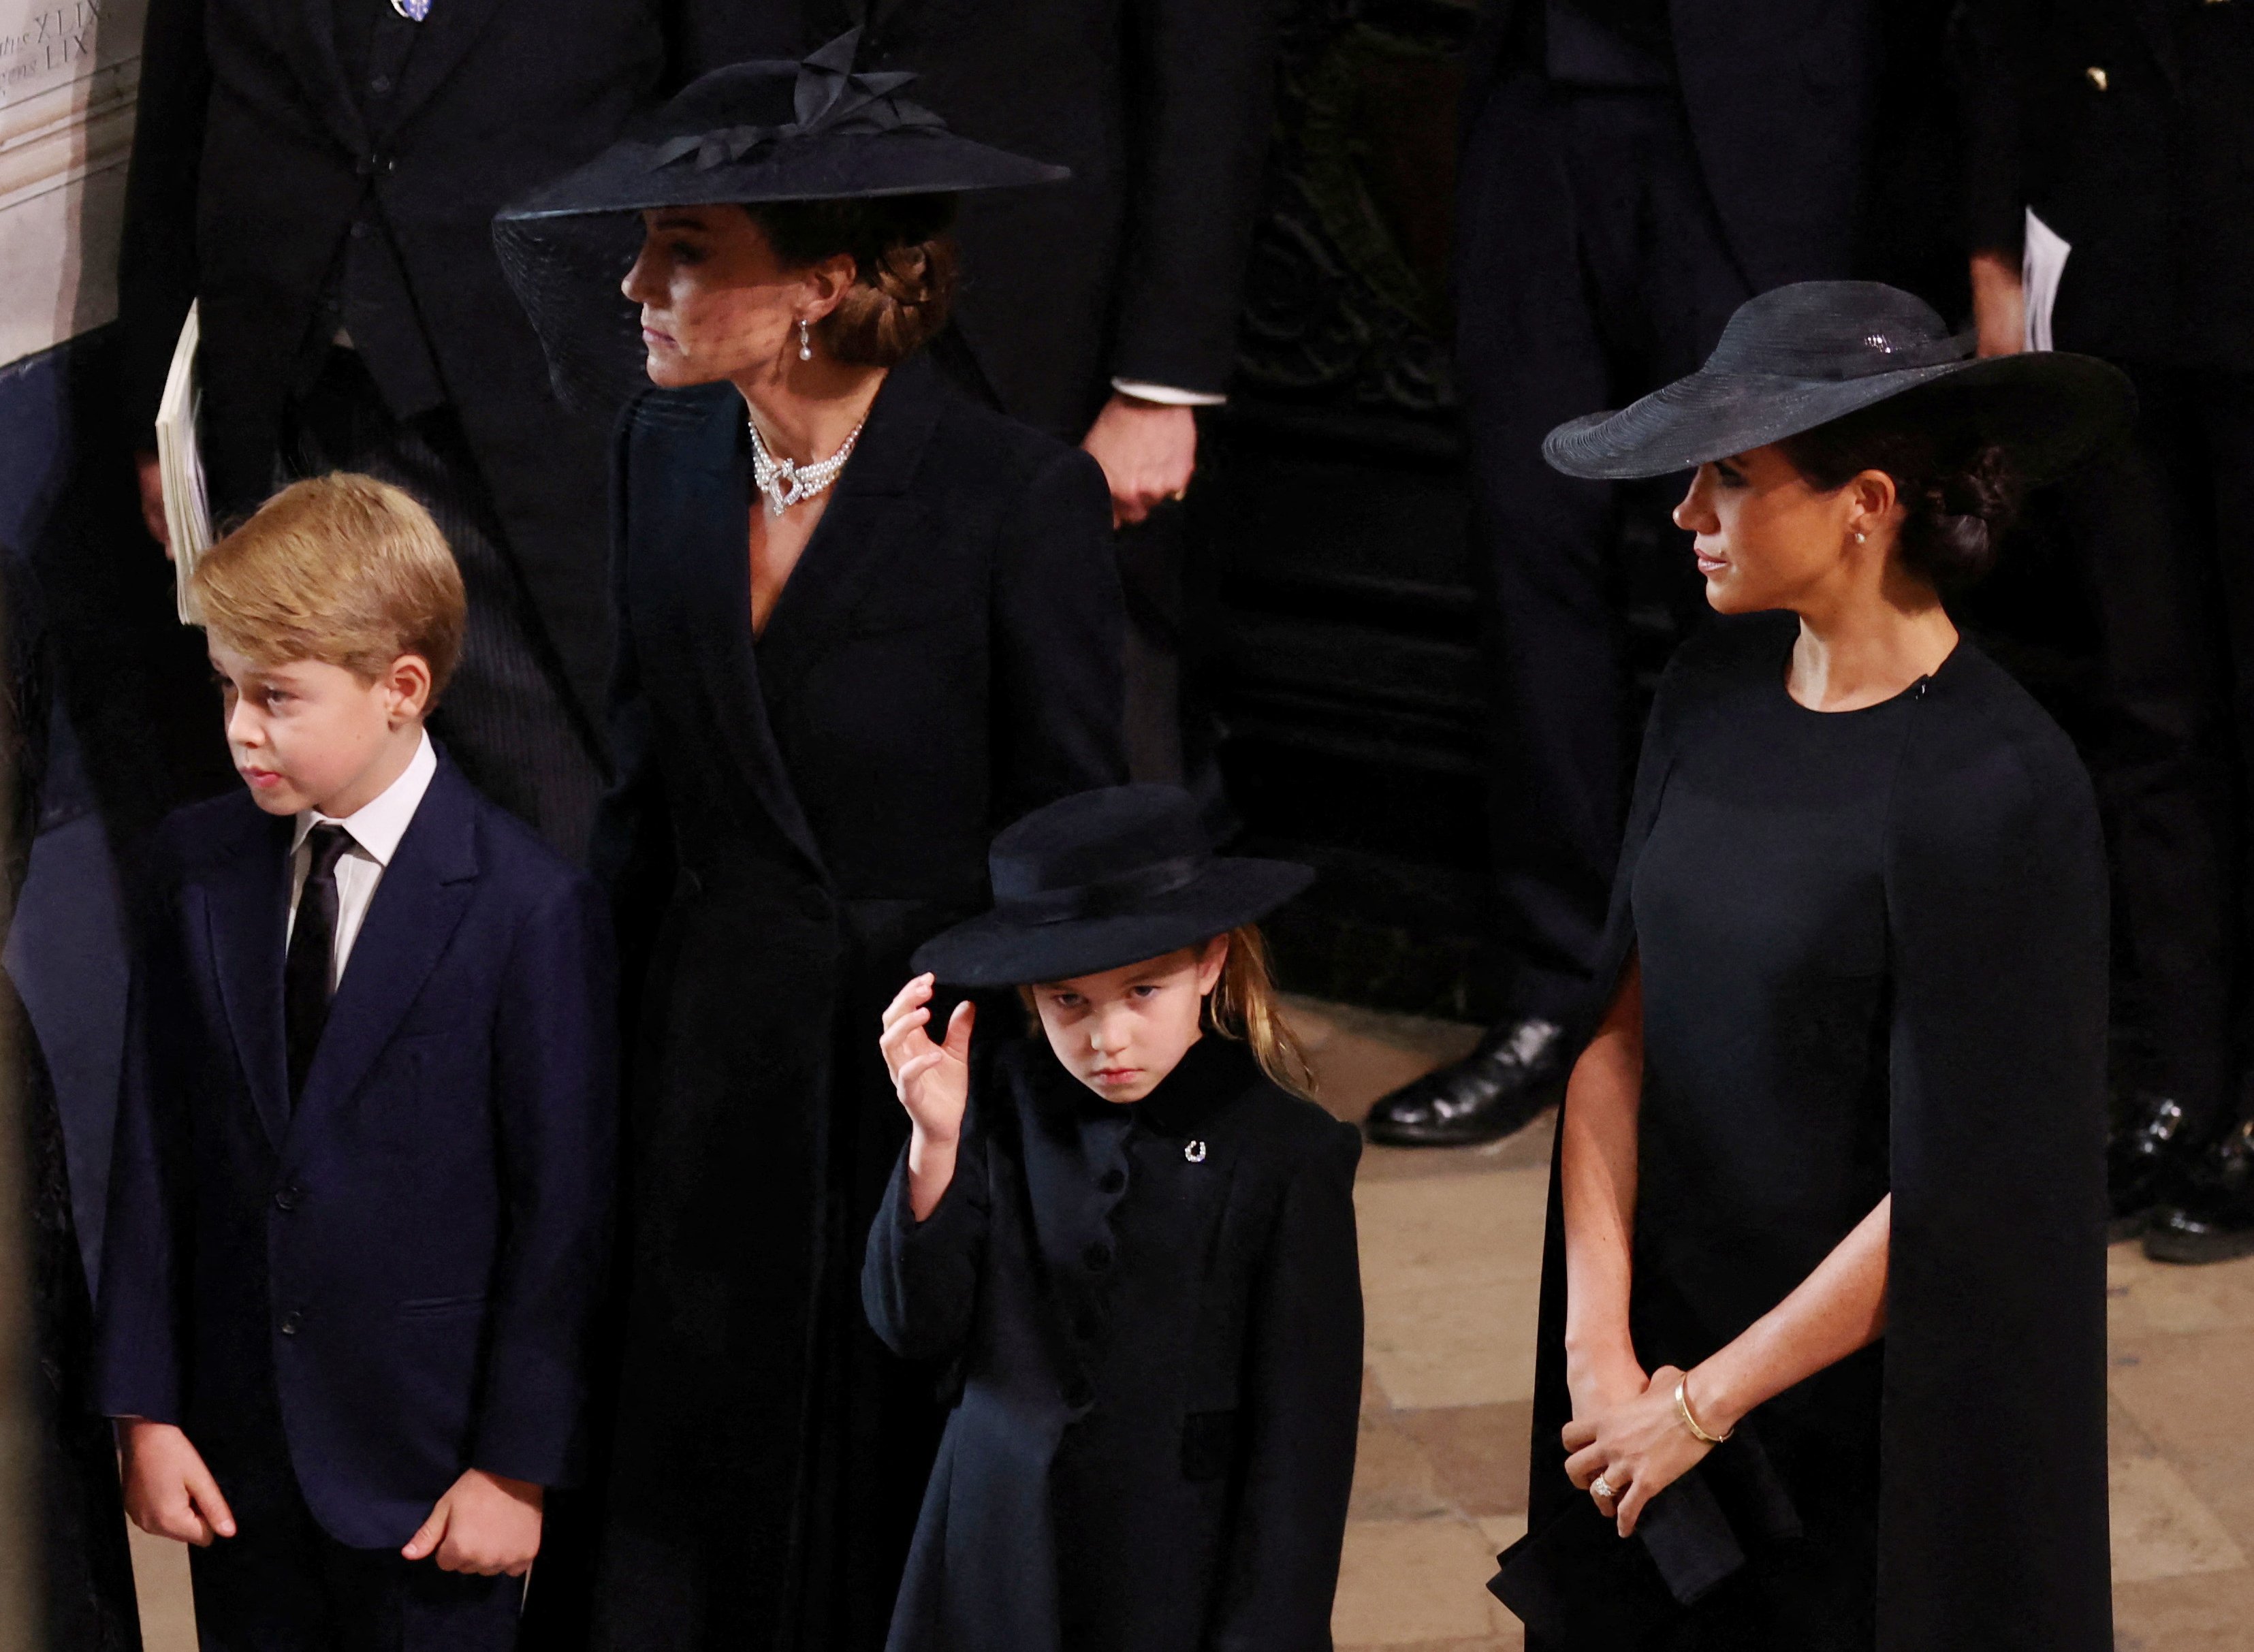 Catherine, princesa de Gales, princesa Charlotte de Gales, príncipe George de Gales y Meghan, duquesa de Sussex, en la Abadía de Westminster para el funeral de estado de la reina Elizabeth II, el 19 de septiembre de 2022 en Londres, Inglaterra. | Foto: Getty Images